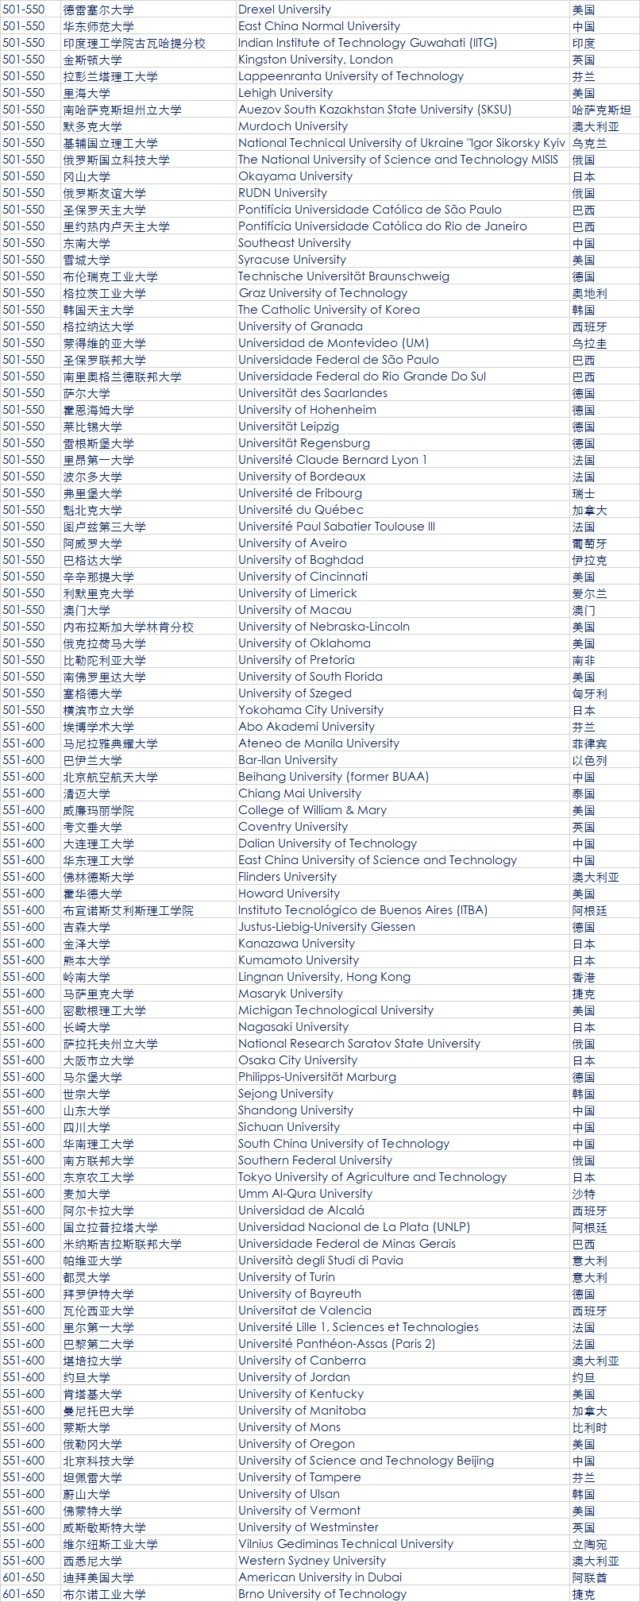 最新QS全球大学排名公布 中国大陆39所大学上榜6